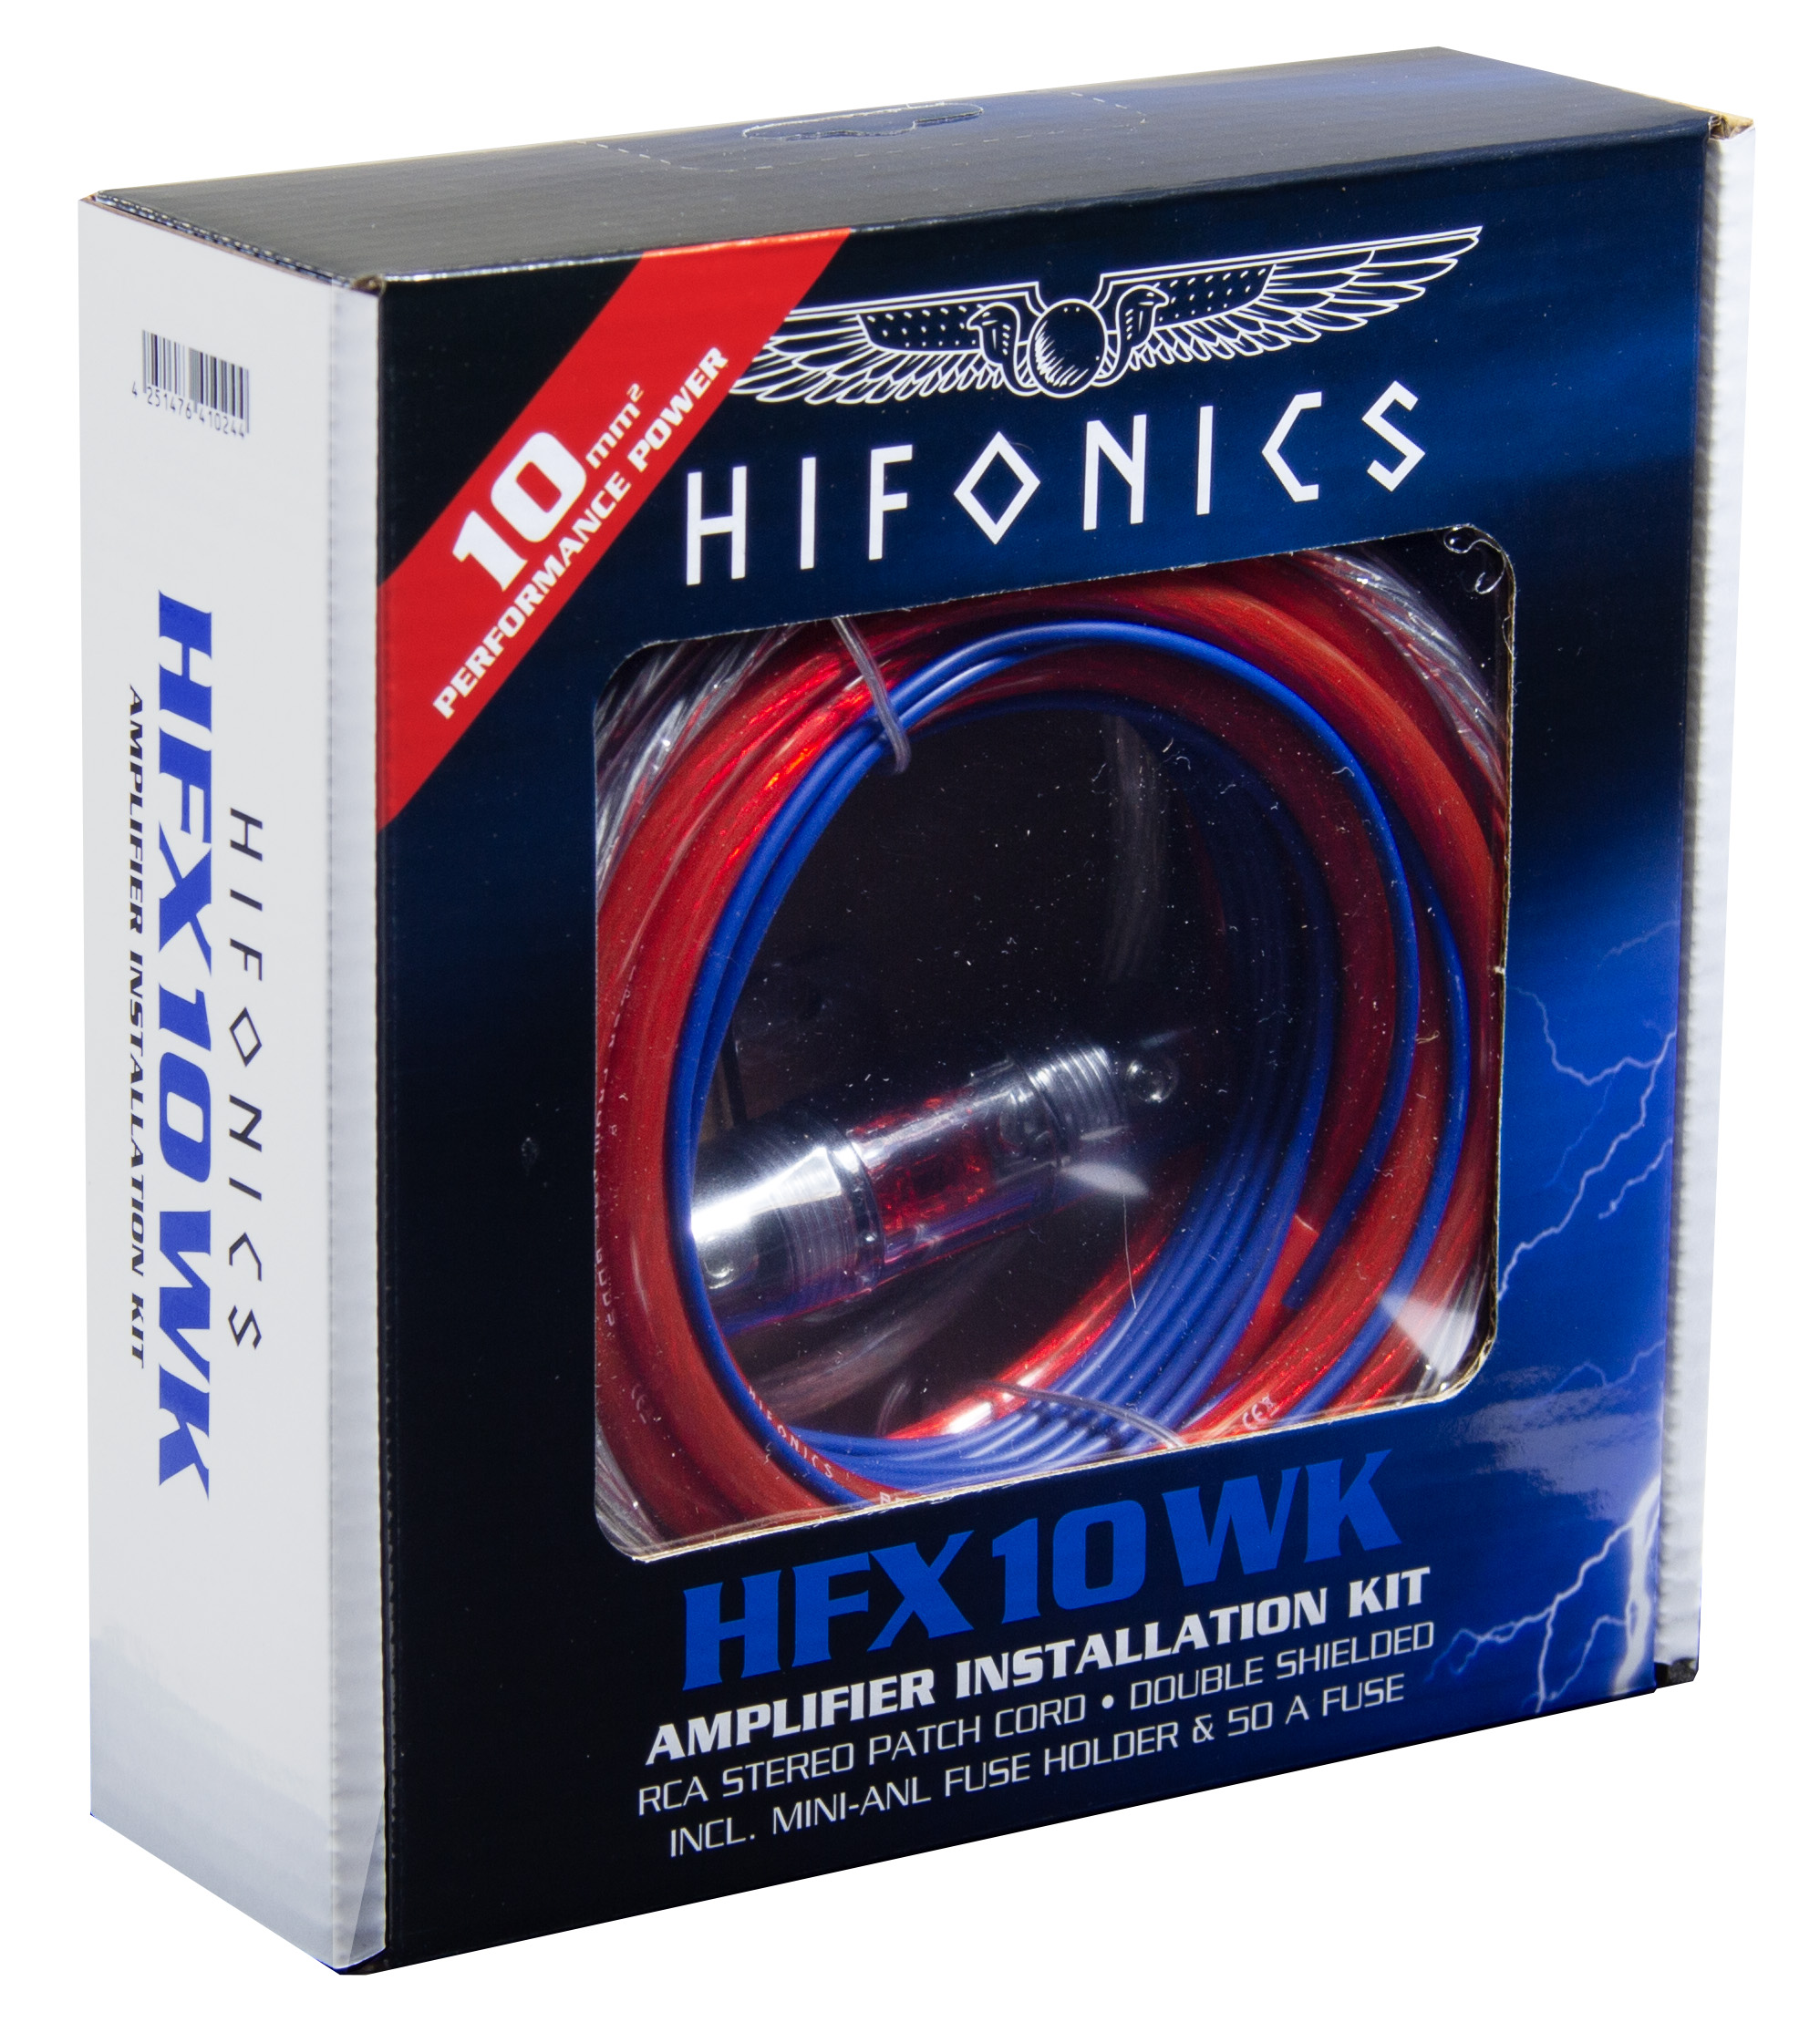 Hifonics HFX10WK Performance Verstärker-Anschluss-Set Power Connection Cable Set 10mm² Set zur Installation von Auto Verstärkern und Aktiv Subwoofern